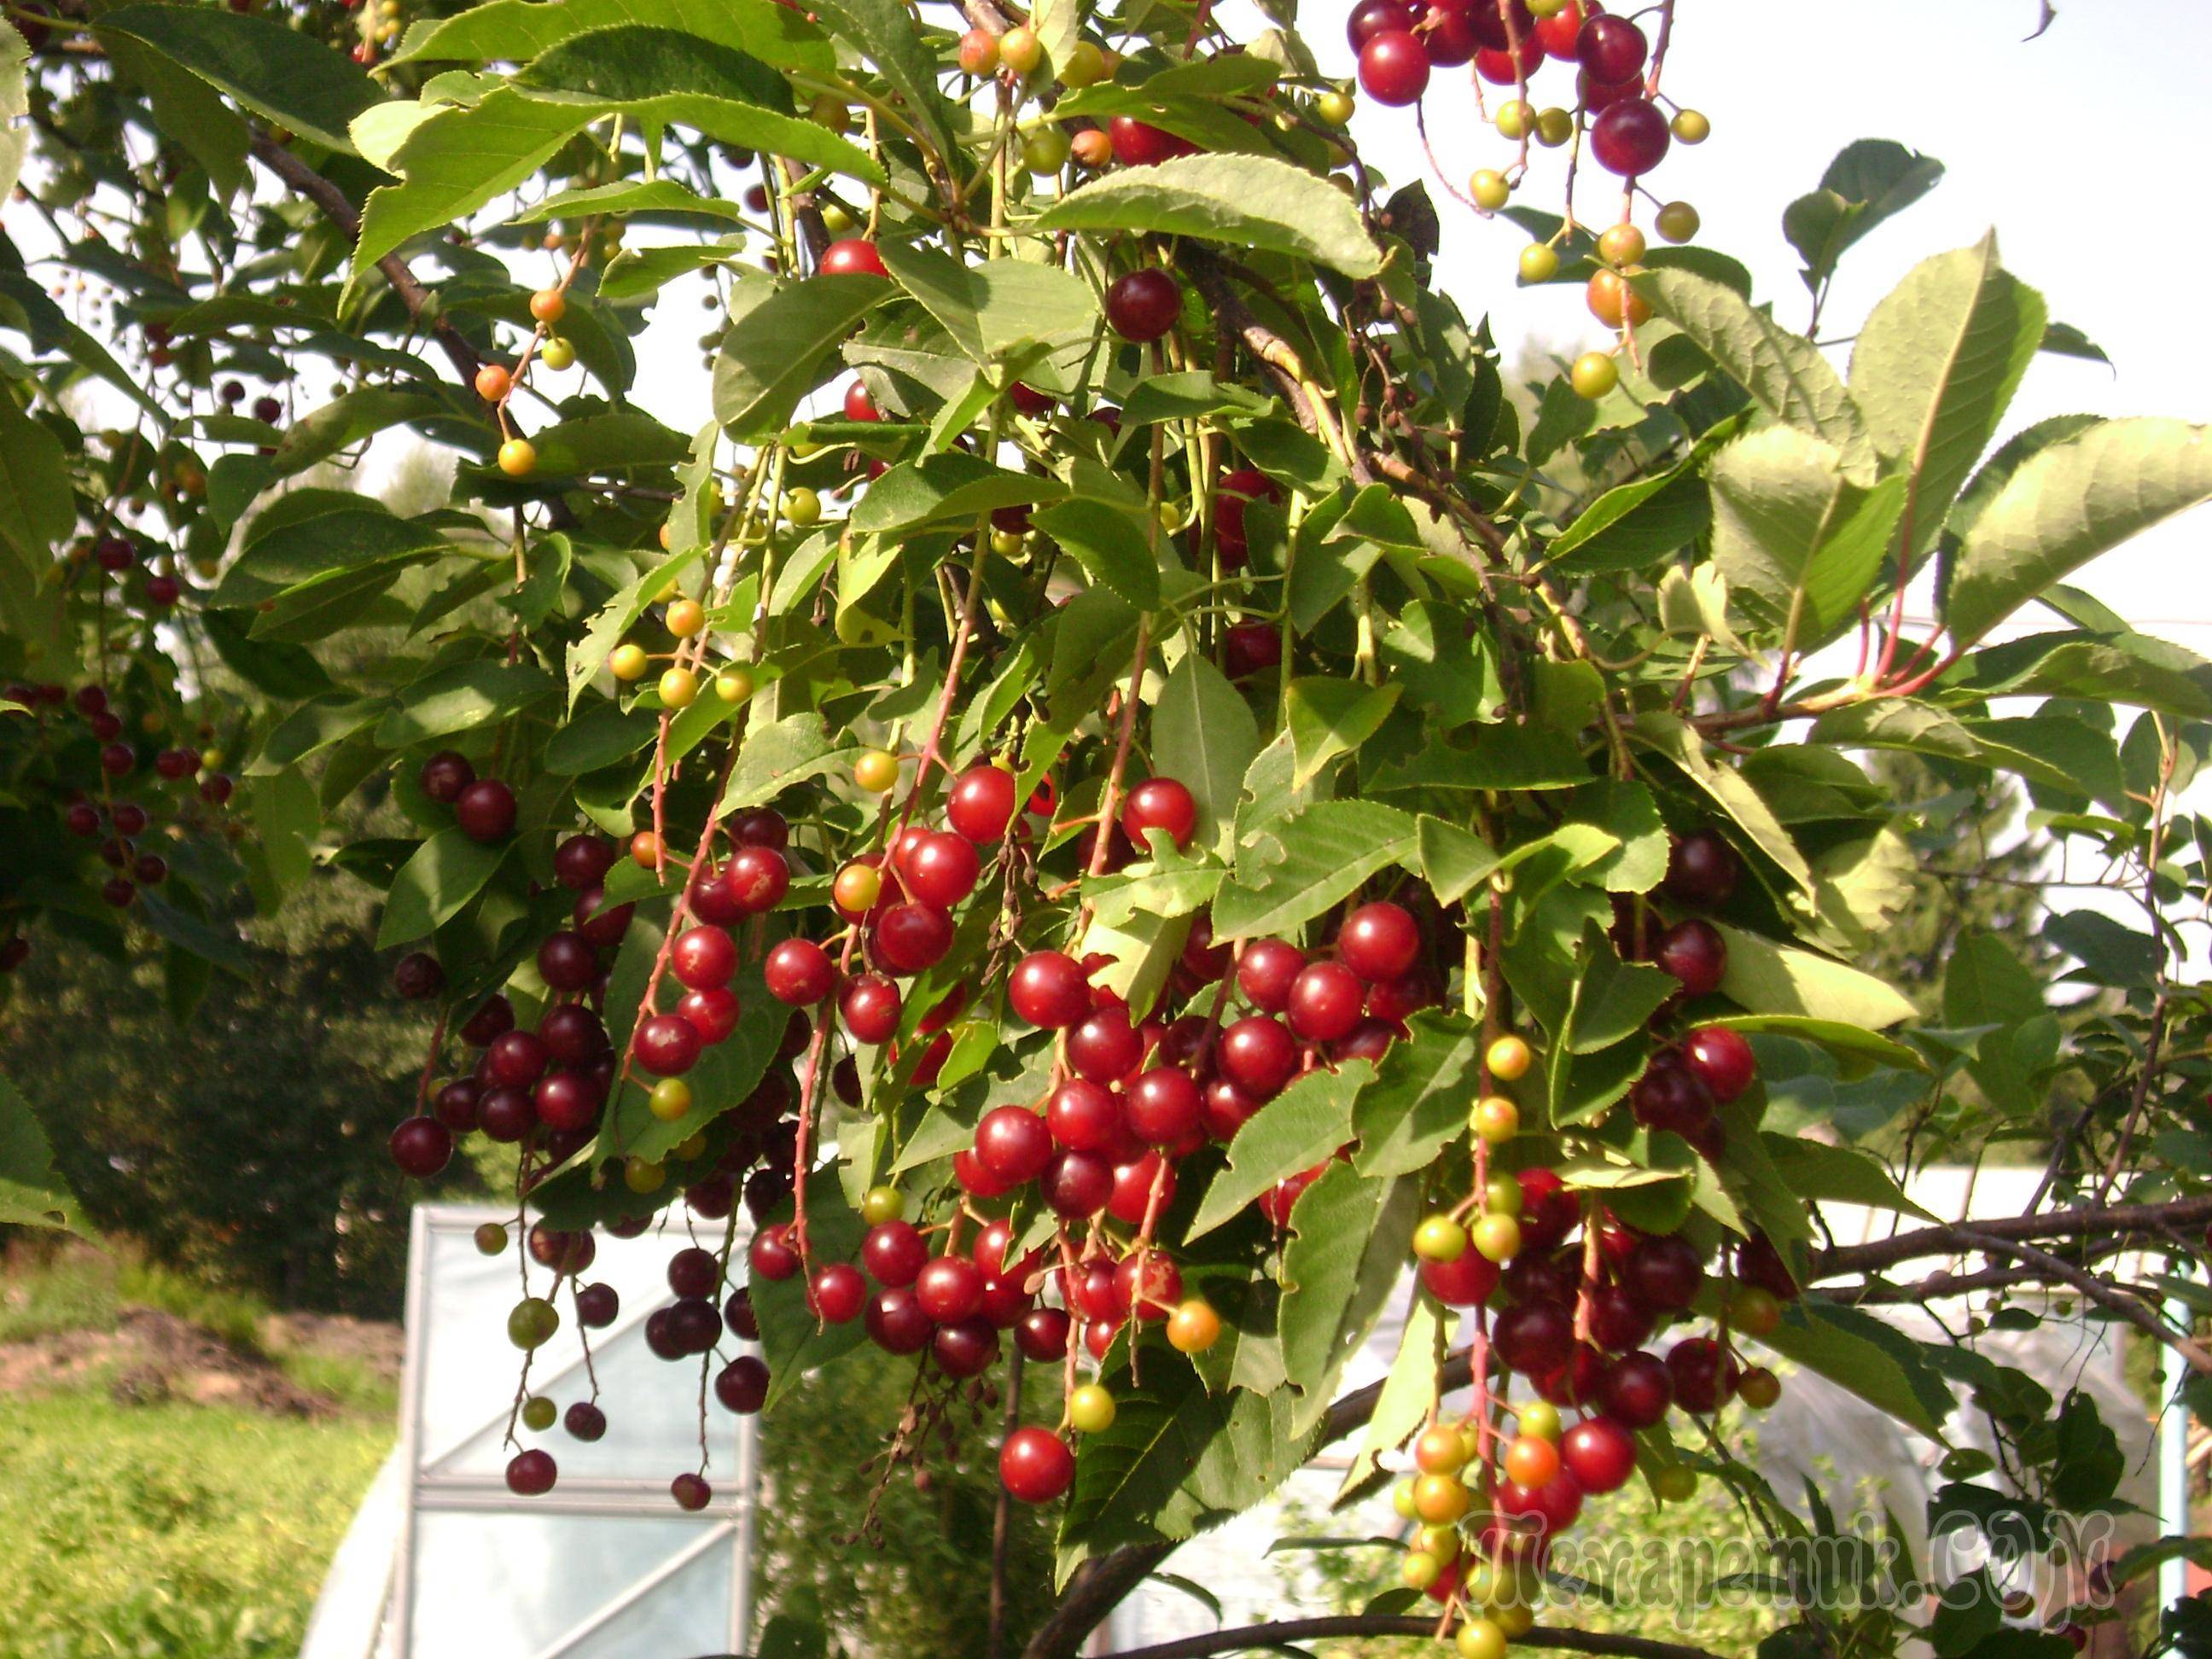 Гибрид вишни и черемухи: падоцерус, церападус, сорта, описание, посадка и уход, выращивание